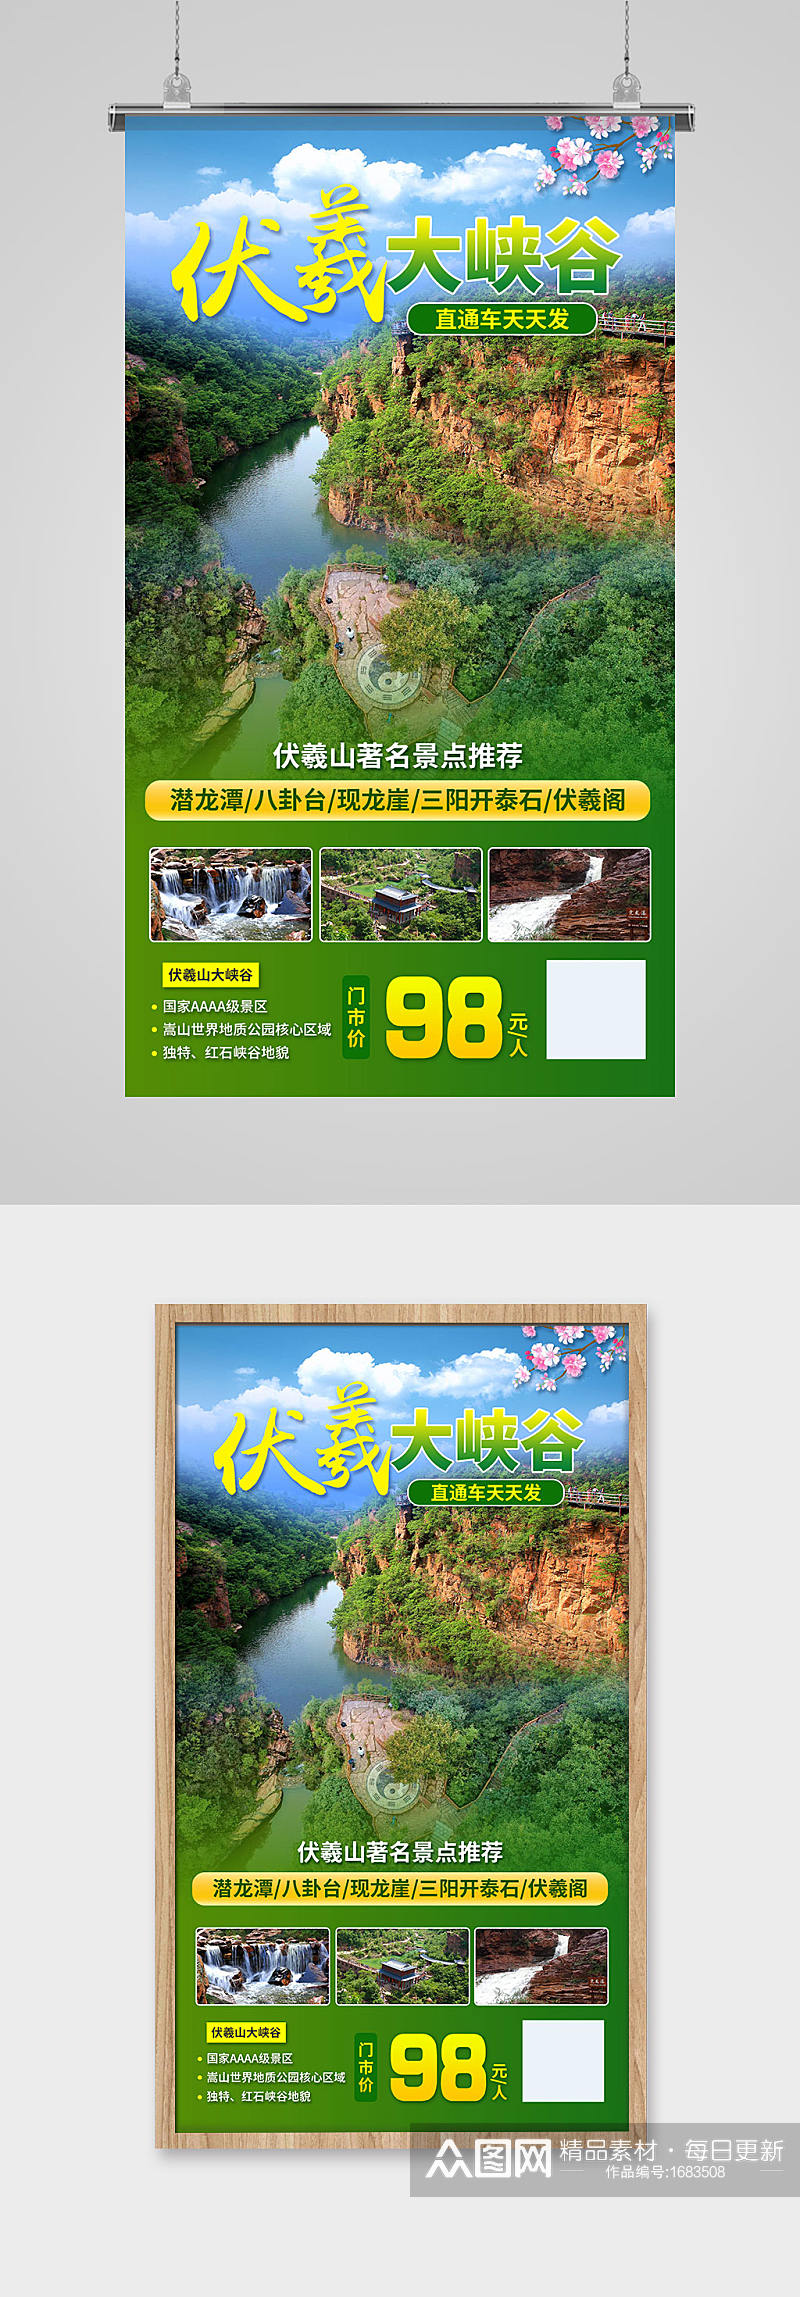 伏羲大峡谷直通车旅游宣传海报素材